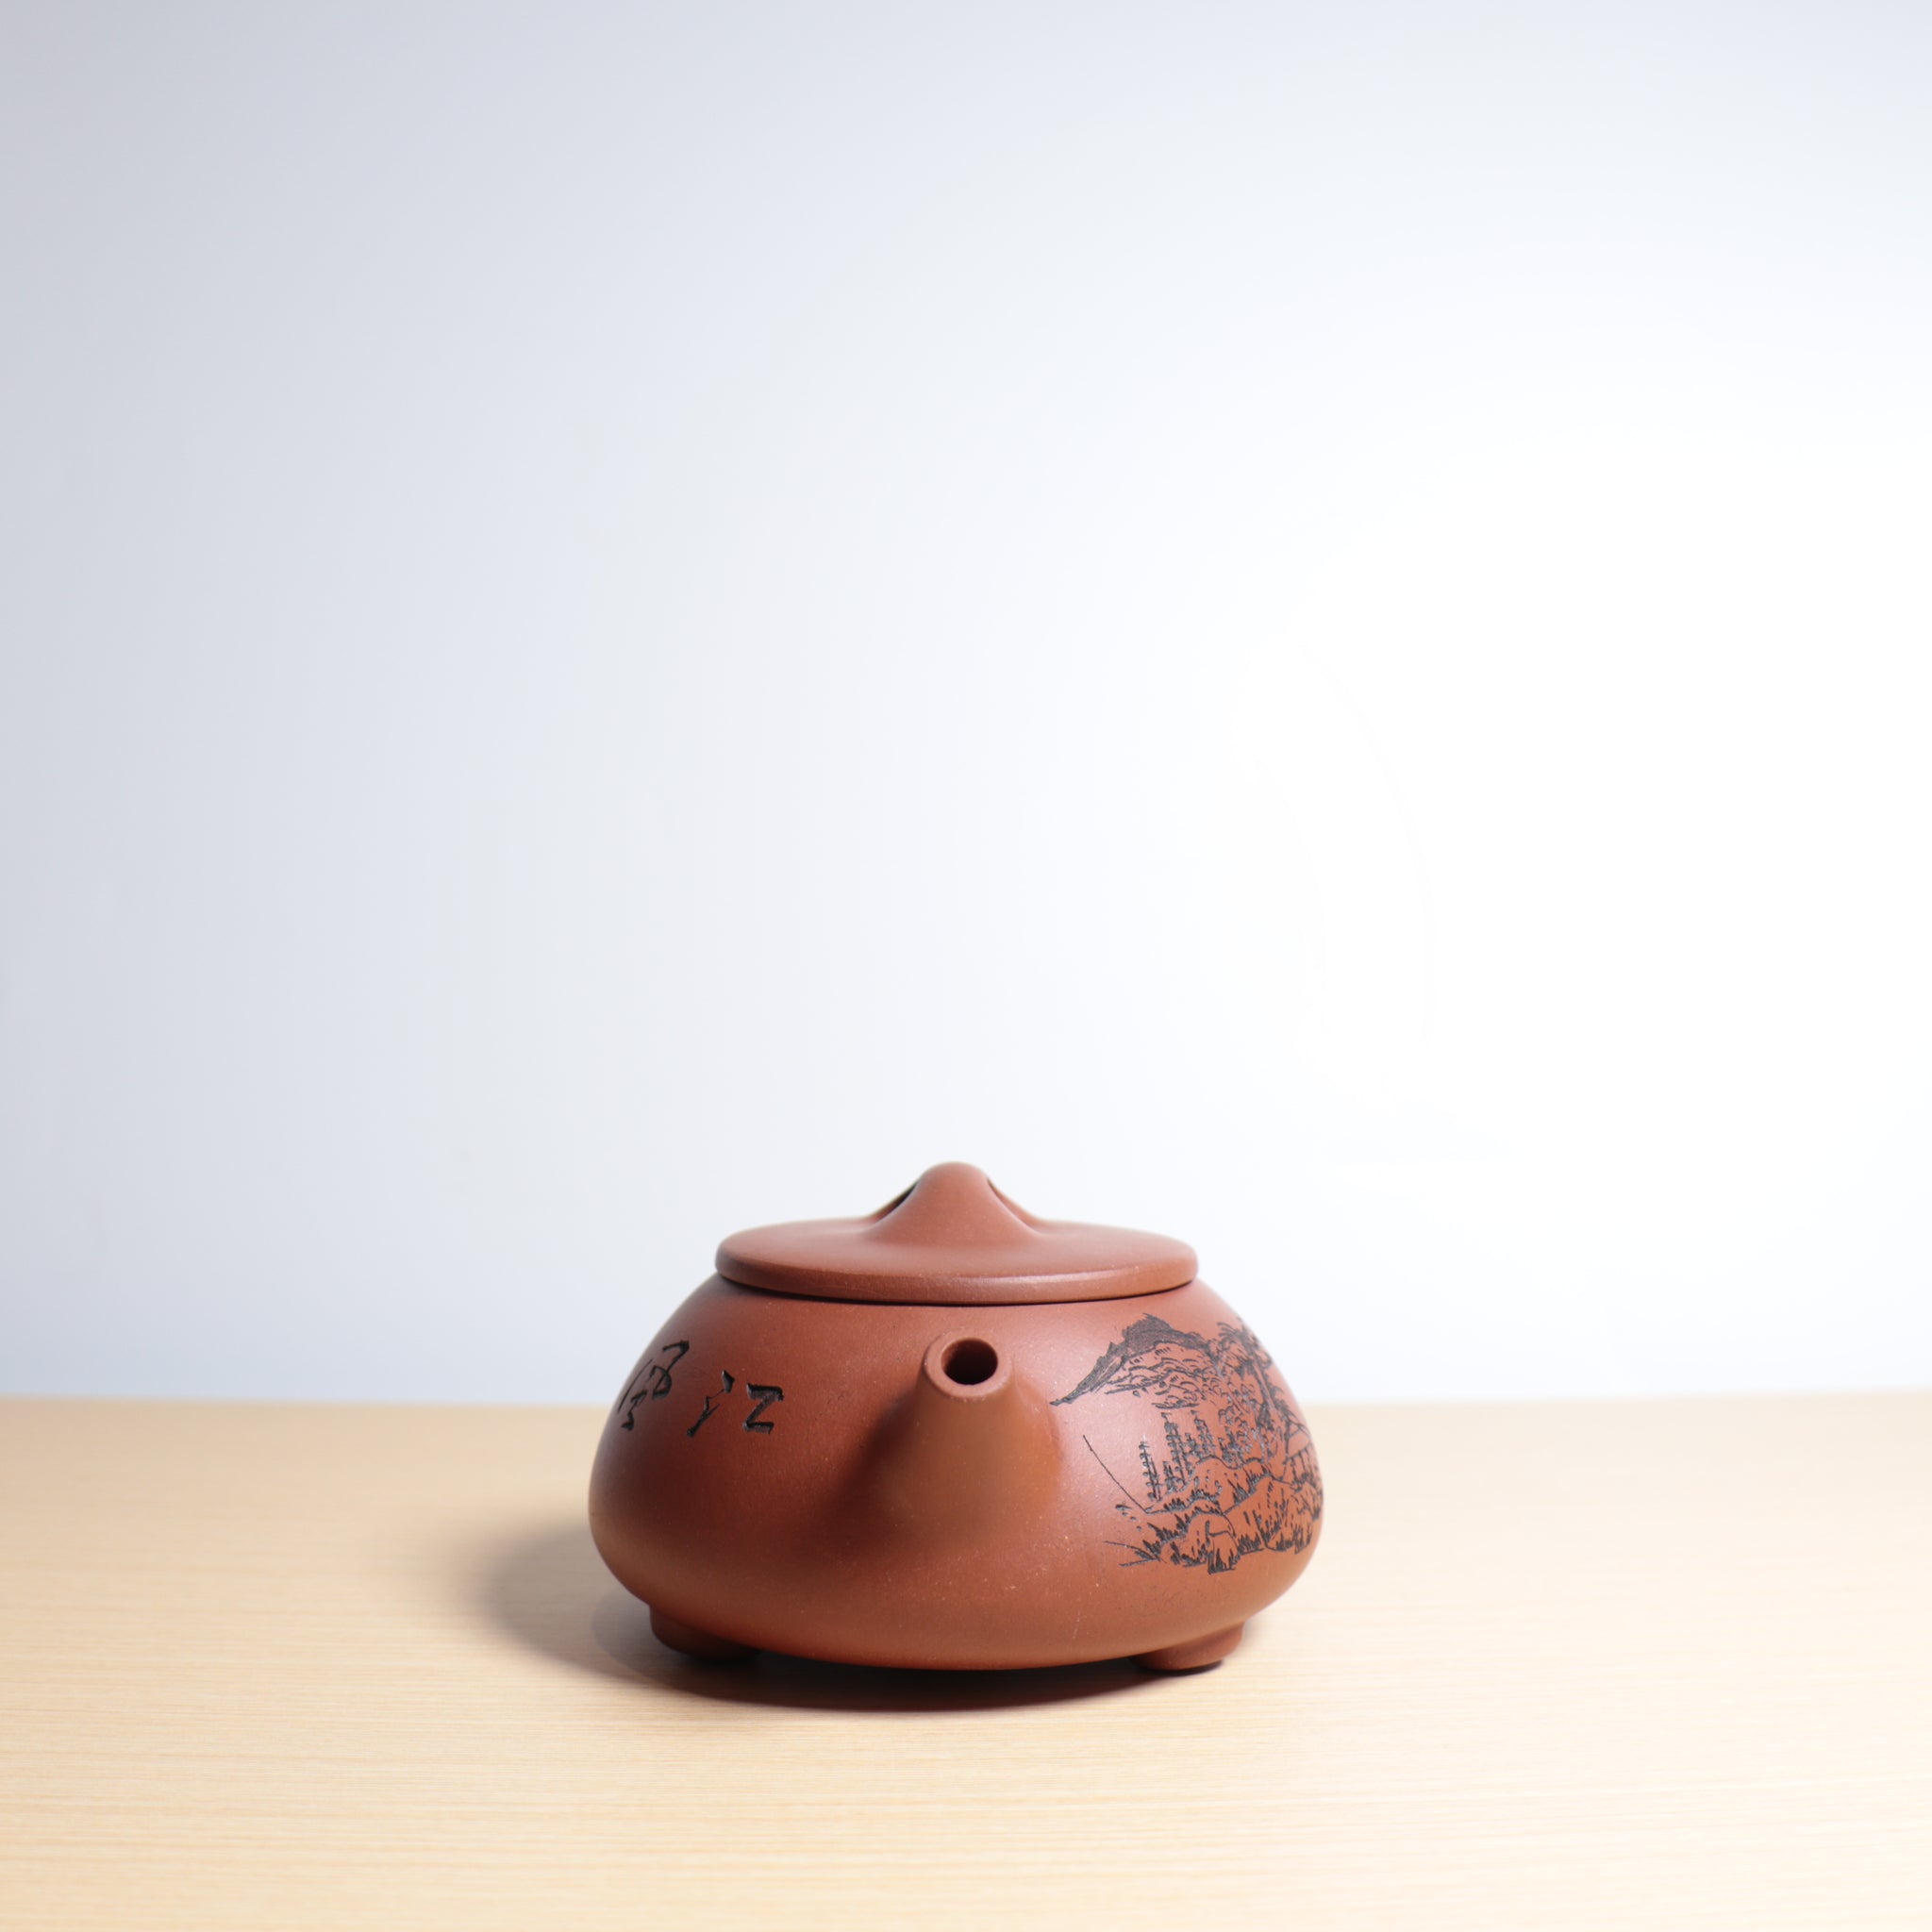 【石瓢】全手工清水泥刻畫紫砂茶壺